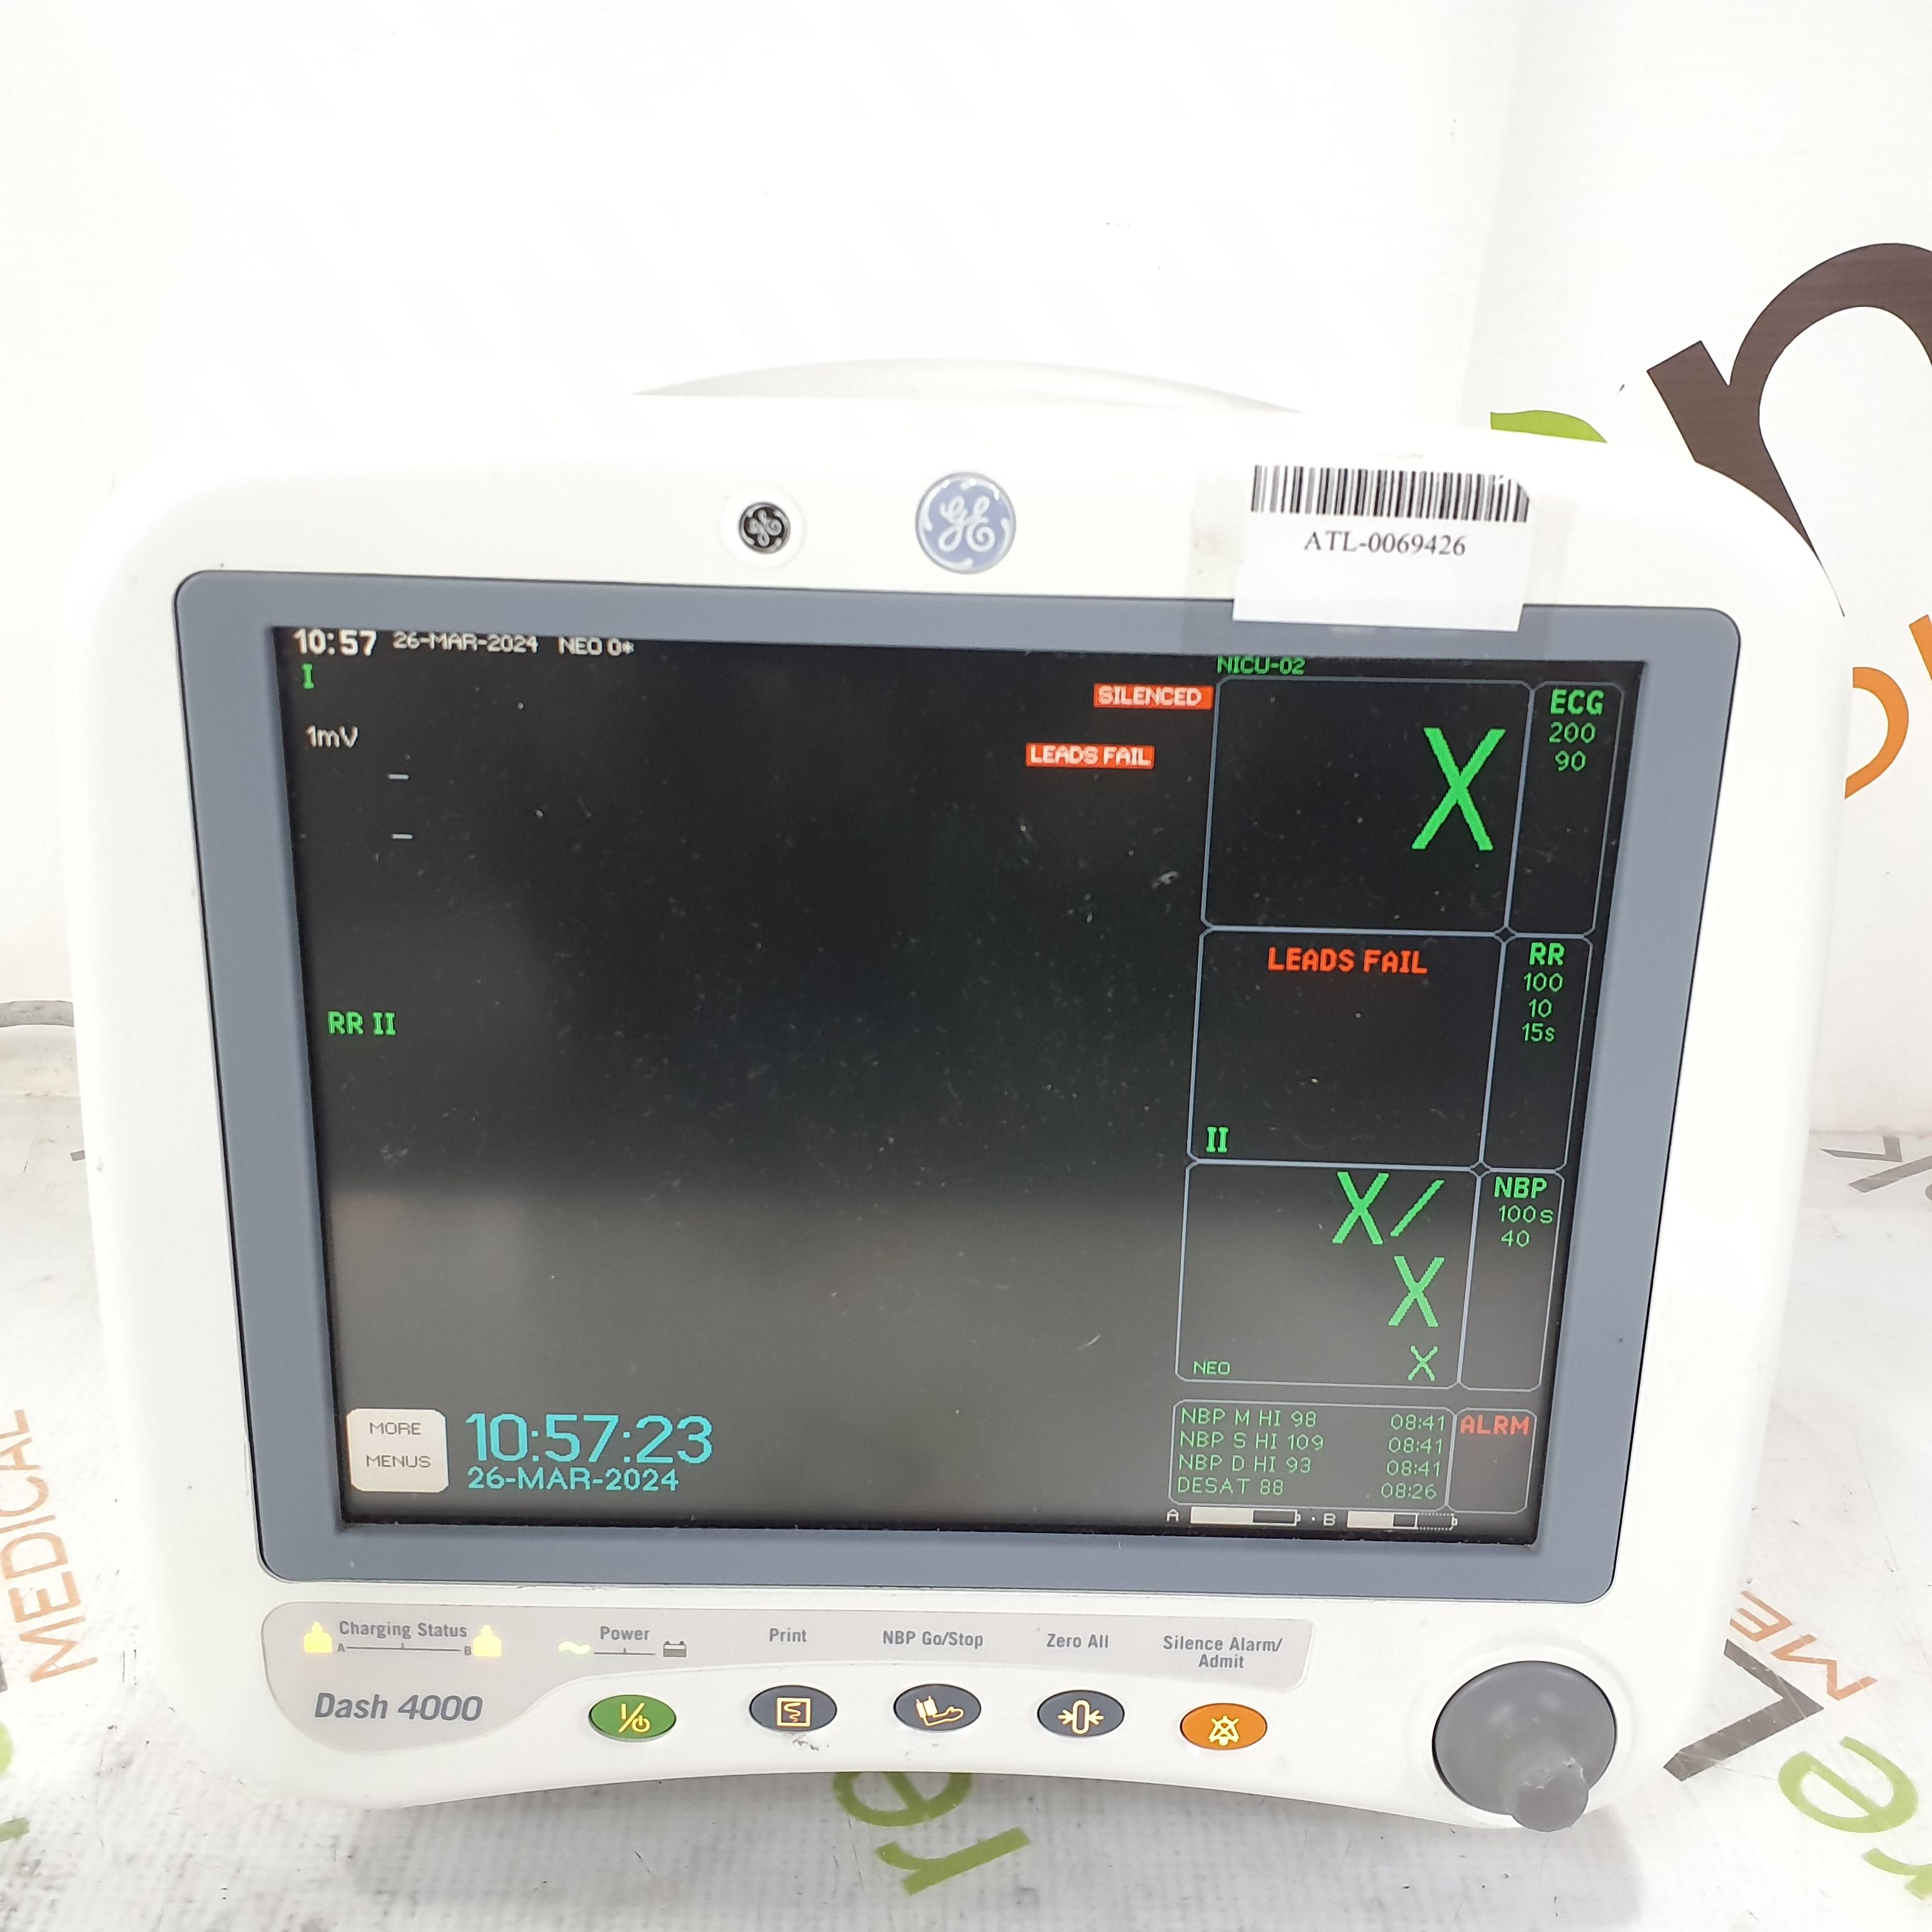 GE Healthcare Dash 4000 - GE/Nellcor SpO2 Patient Monitor - 386583